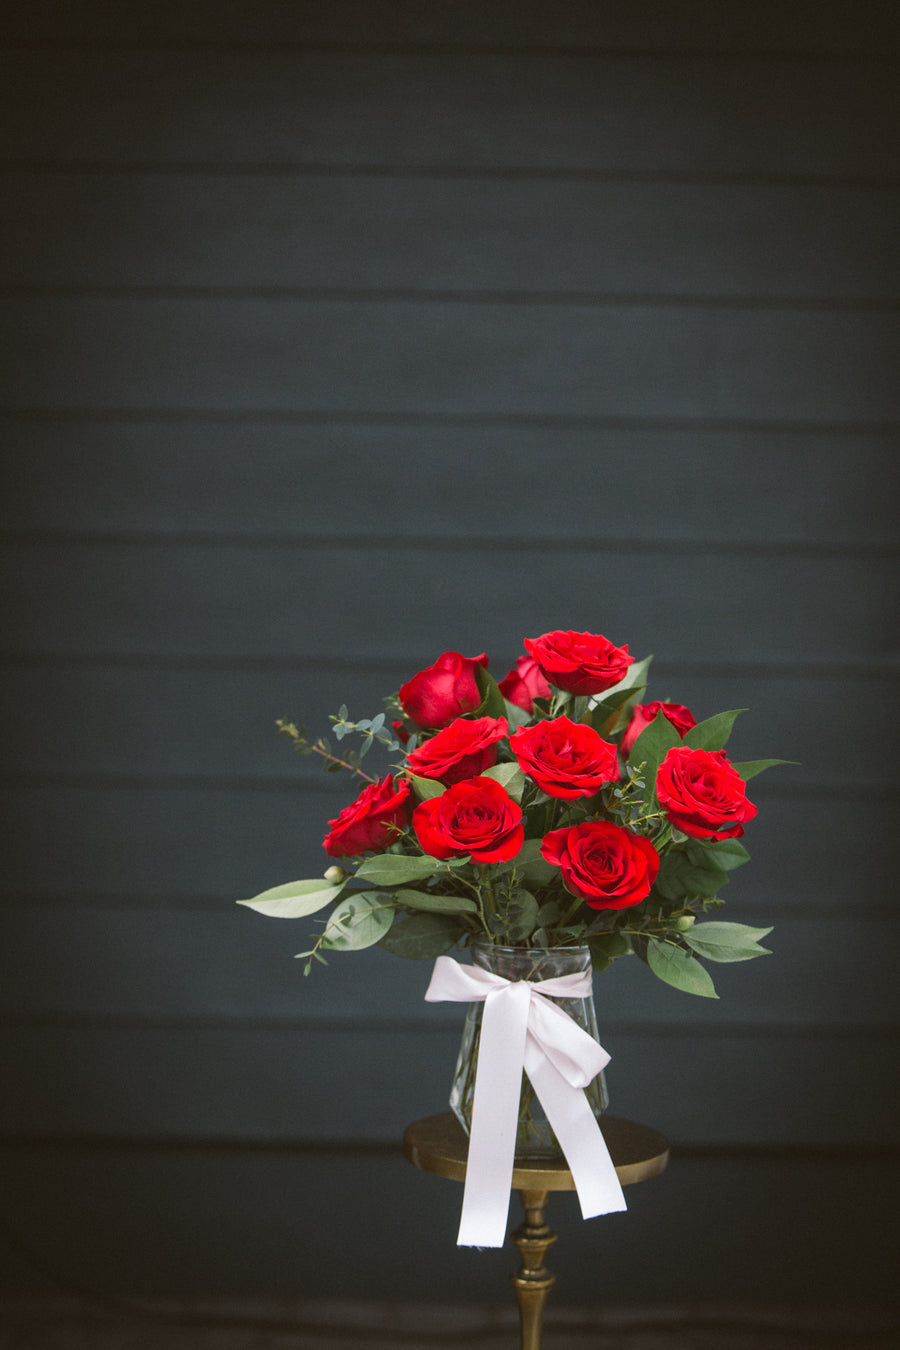 One dozen red roses in vase